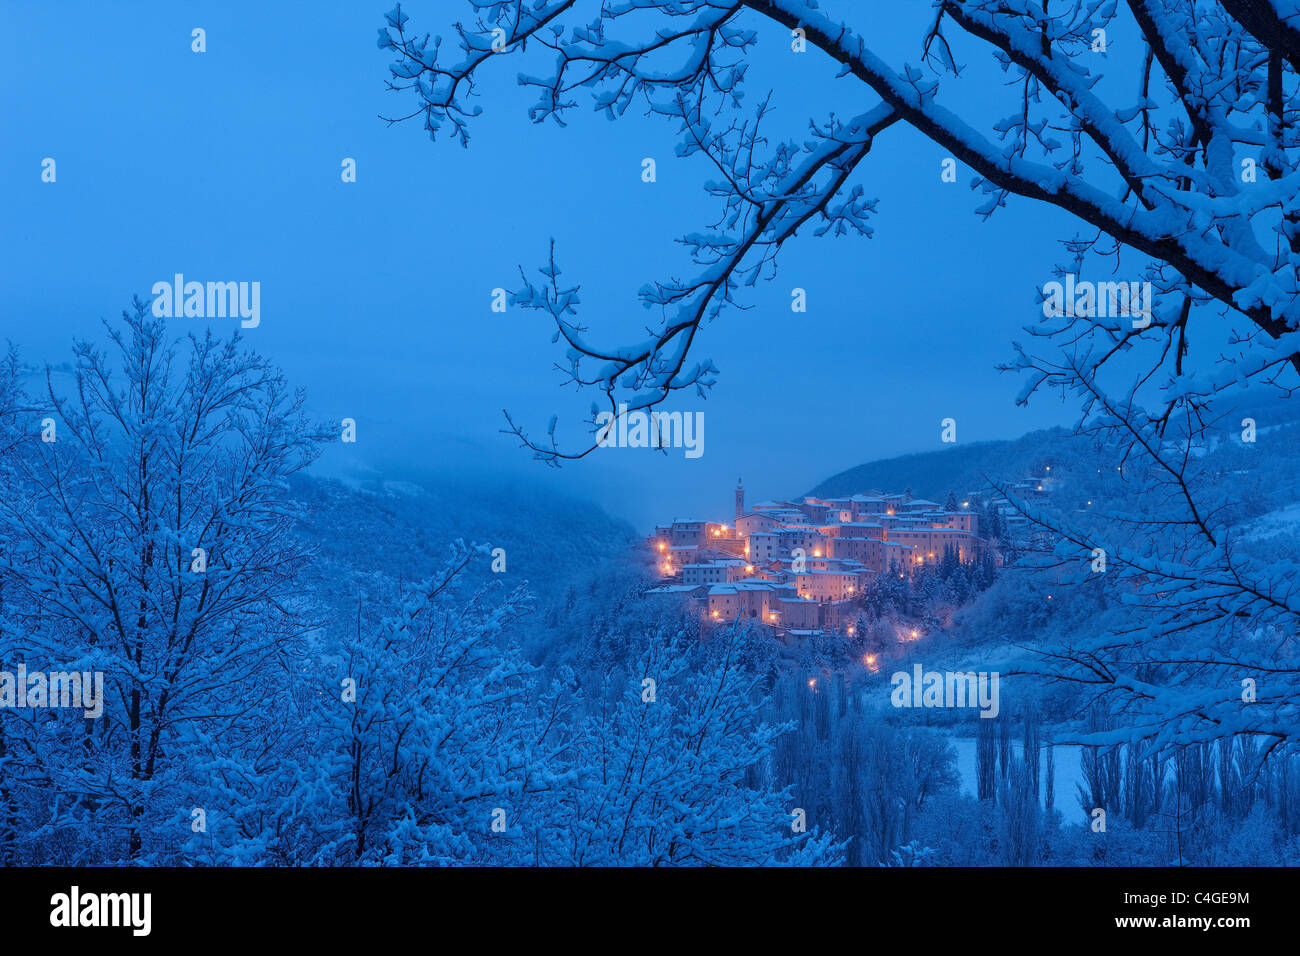 Preci al amanecer en invierno, Valnerina, Monti Sibillini National Park, Umbría. Foto de stock